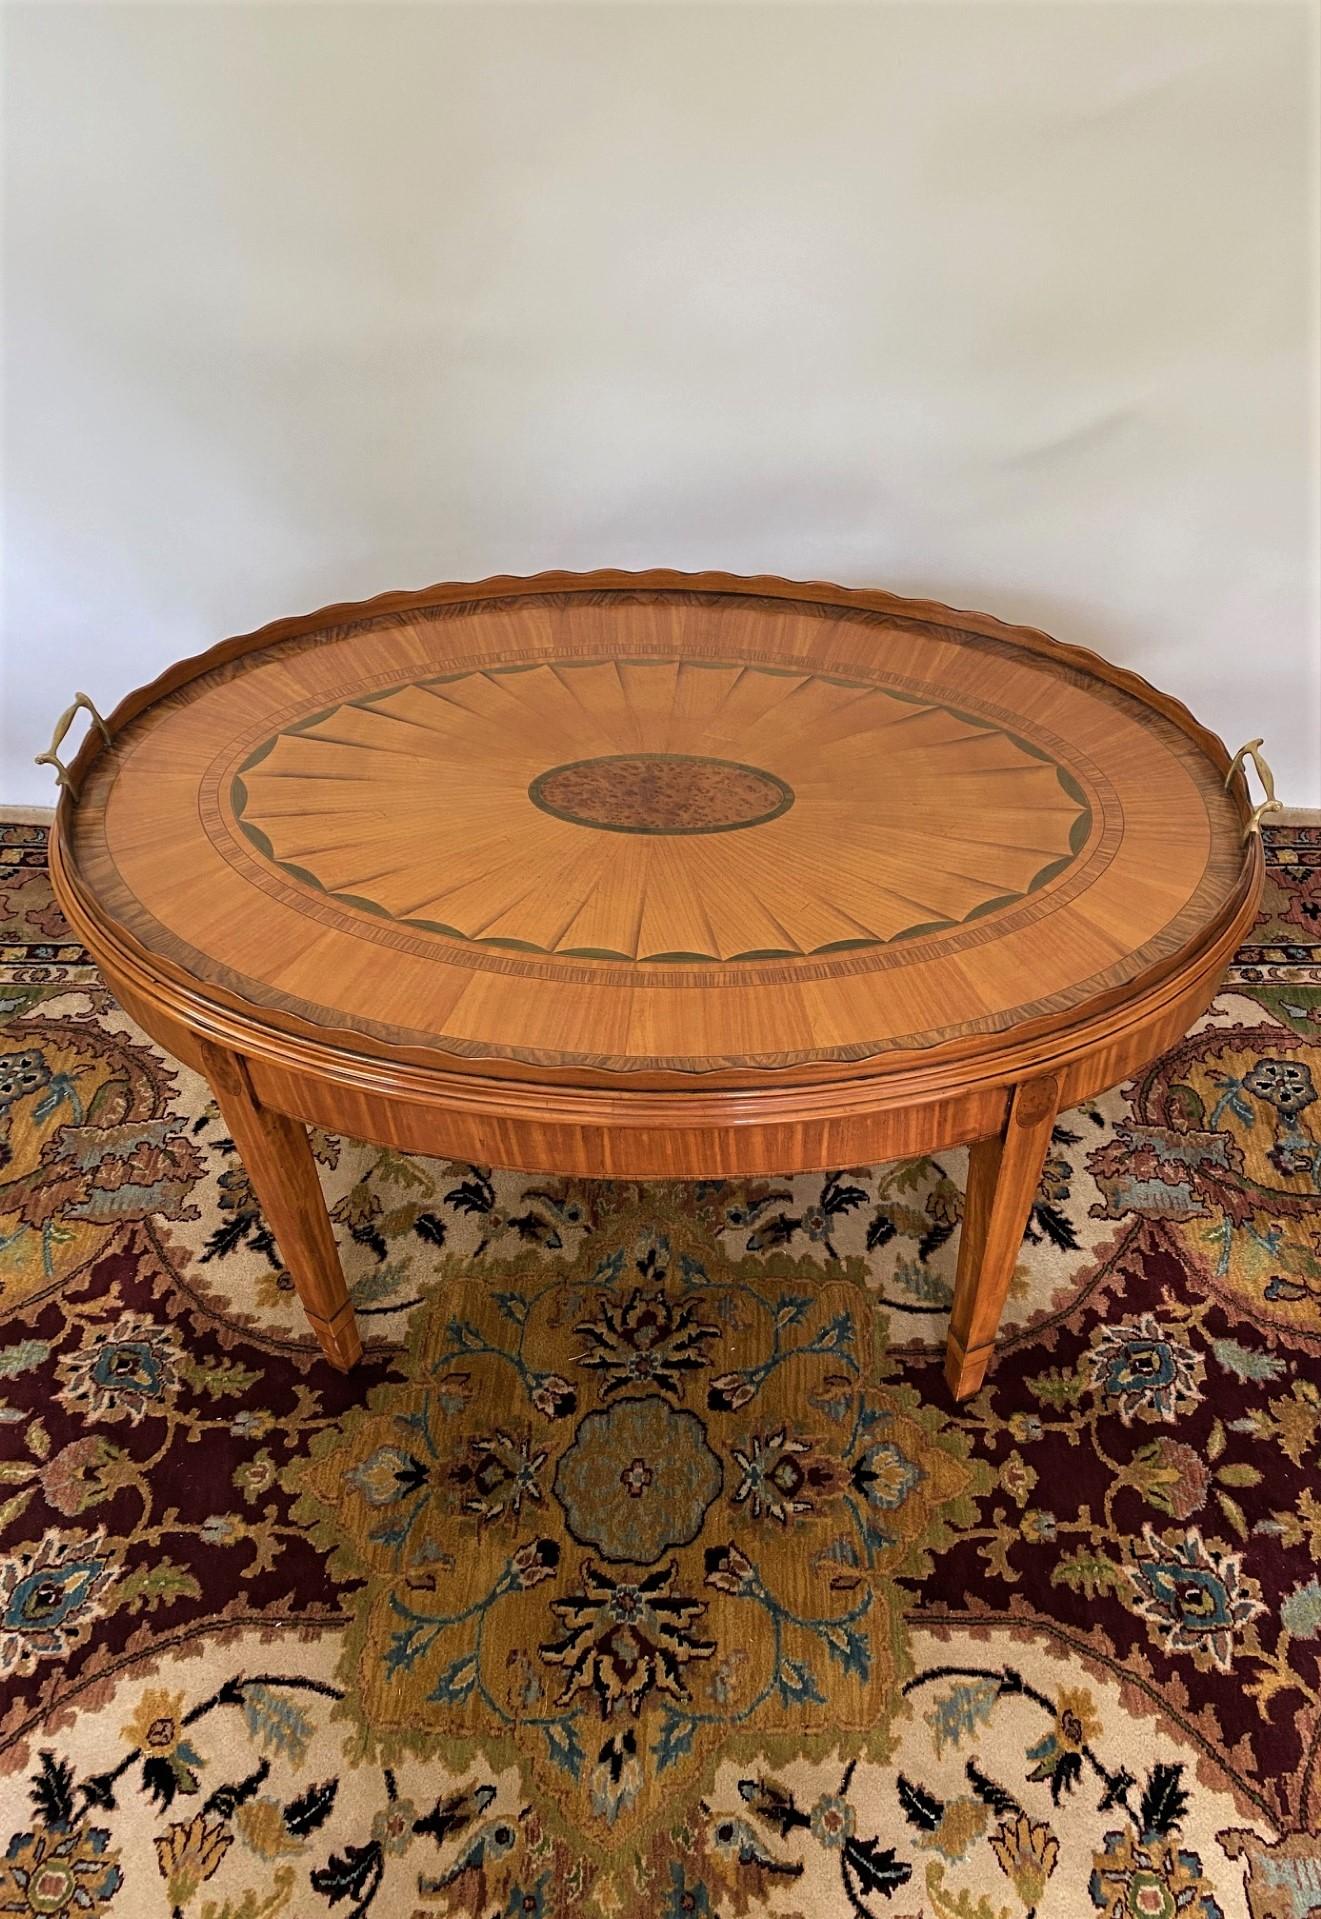 Cette table à plateau riche et royale de Wood & HOGAN s'inspire d'un plateau original du XVIIIe siècle appartenant à la collection personnelle d'un éminent antiquaire britannique de renommée internationale. 
La table à plateau Norfolk est unique